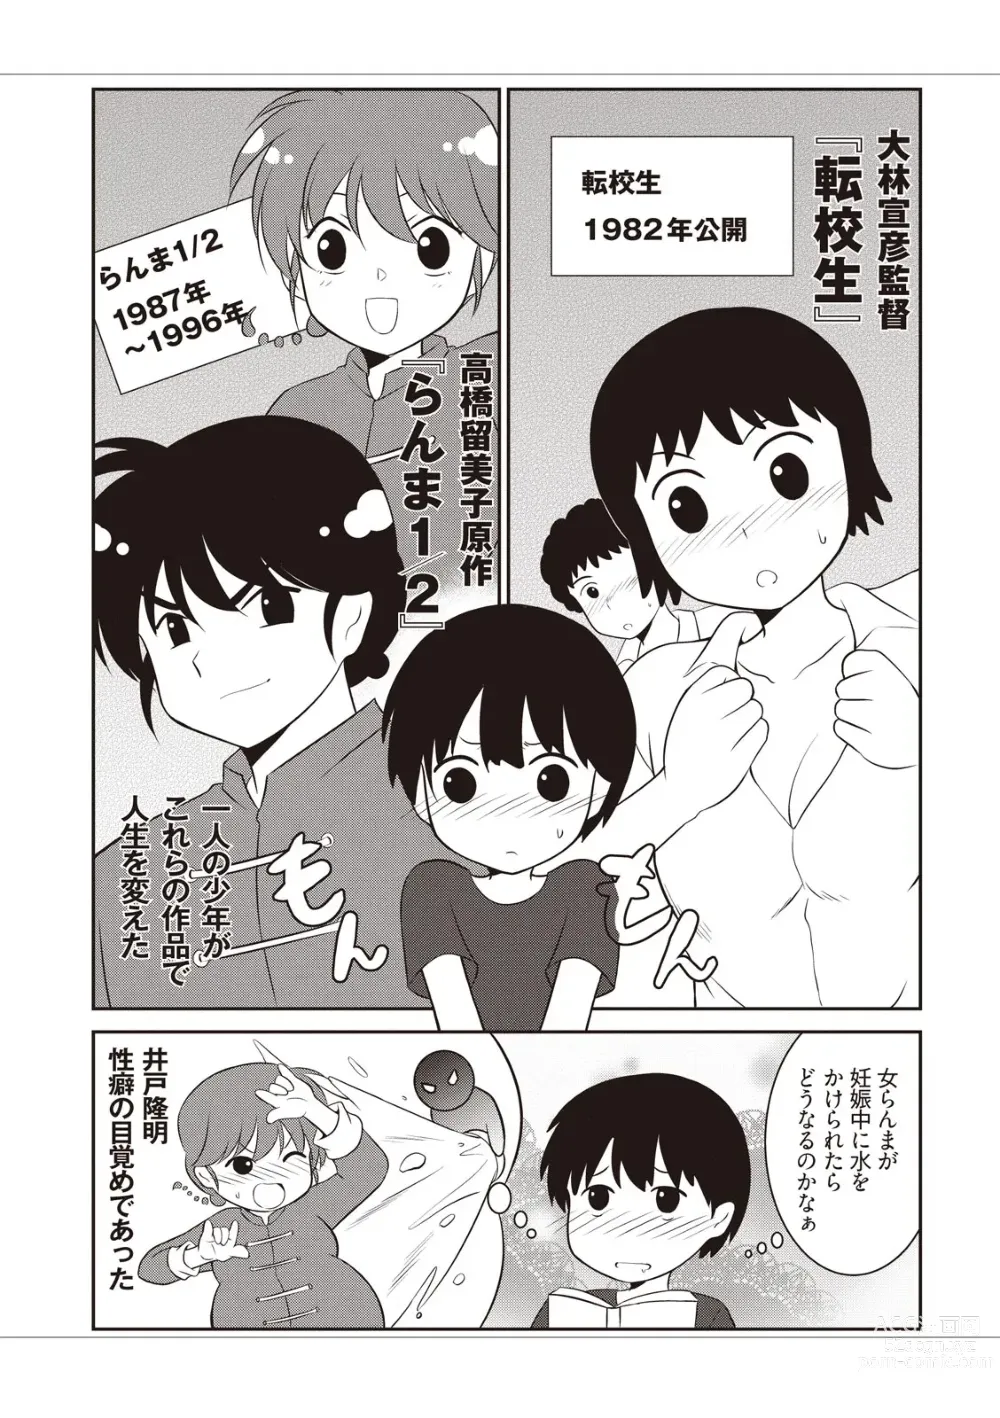 Page 15 of manga Manga de Furikaeru Otokonoko 10-nenshi